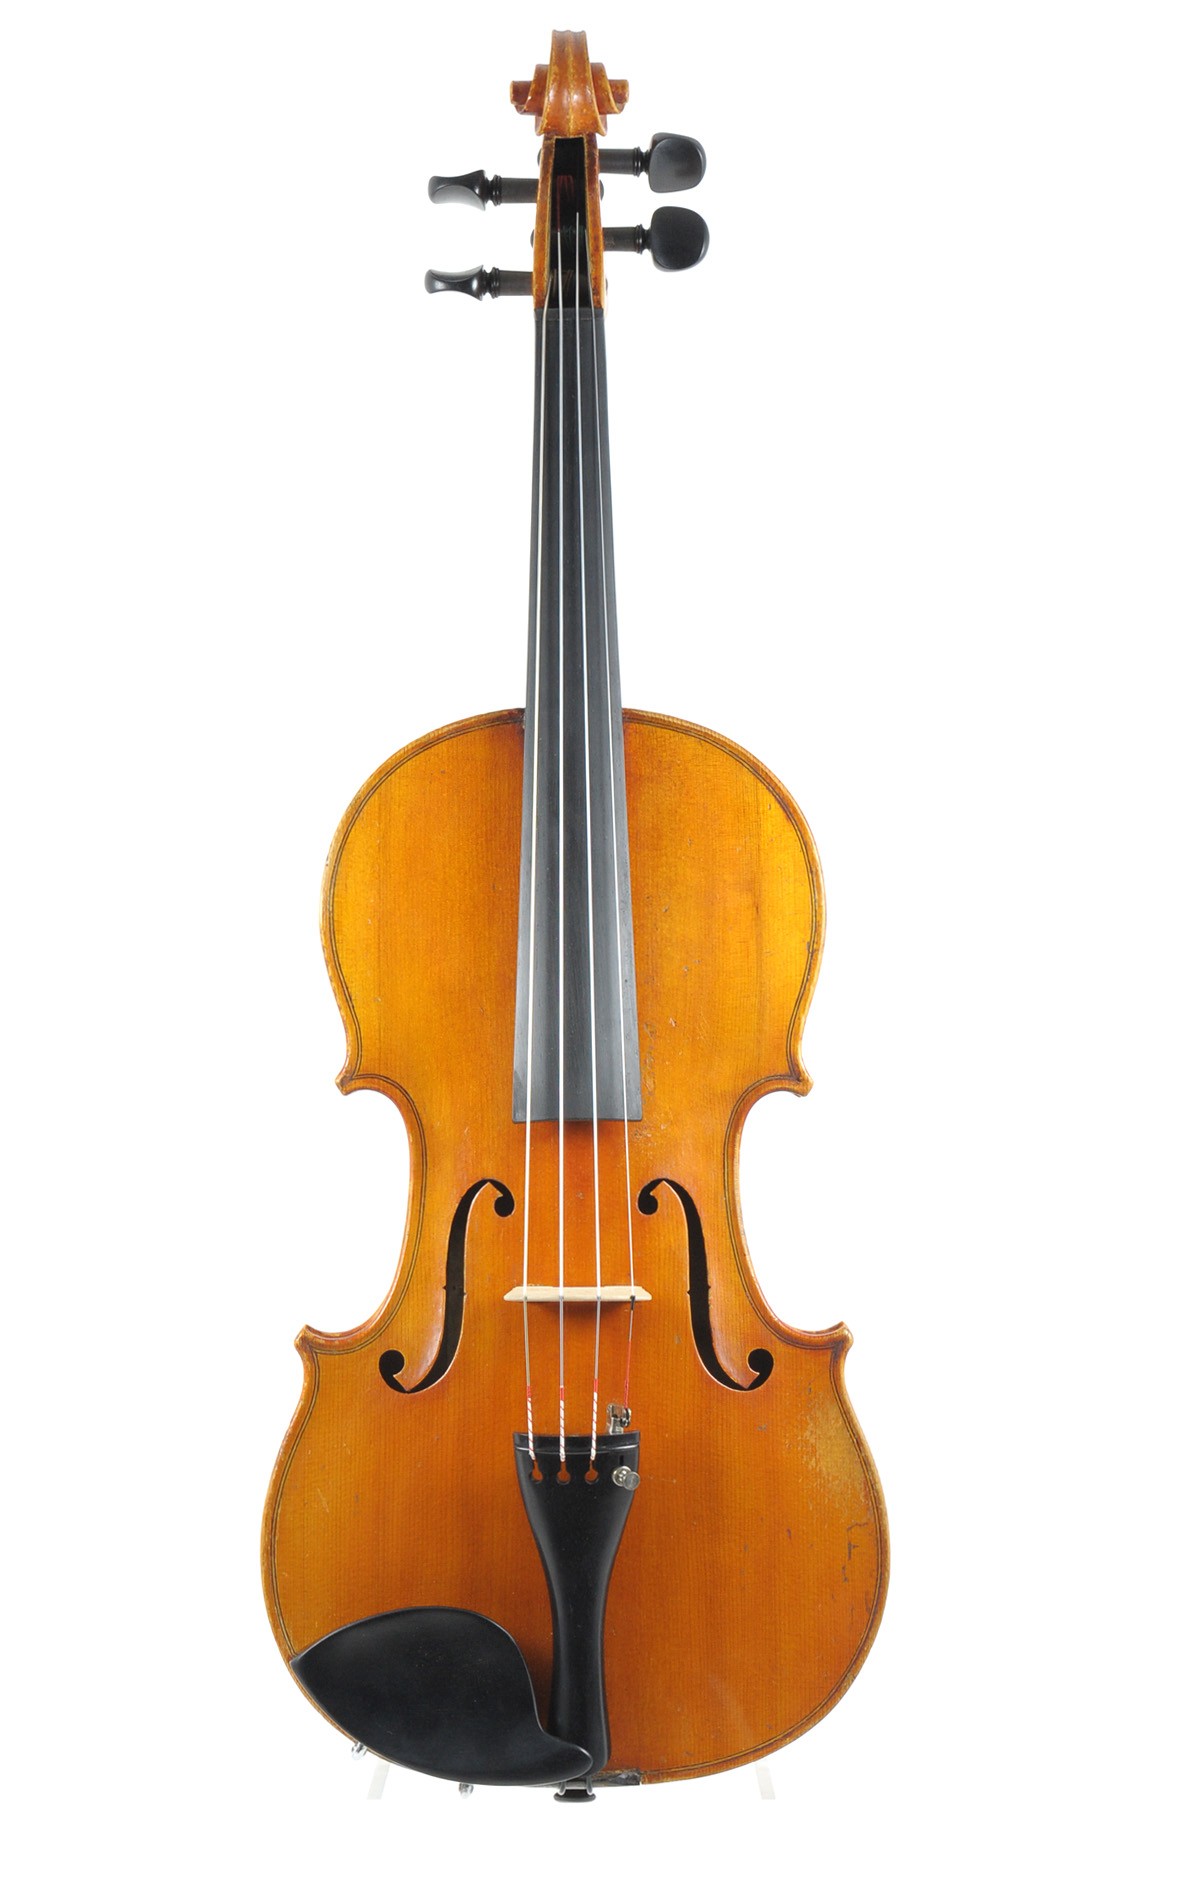 Violin by Balthasar Klotz, Mittenwald, around 1900